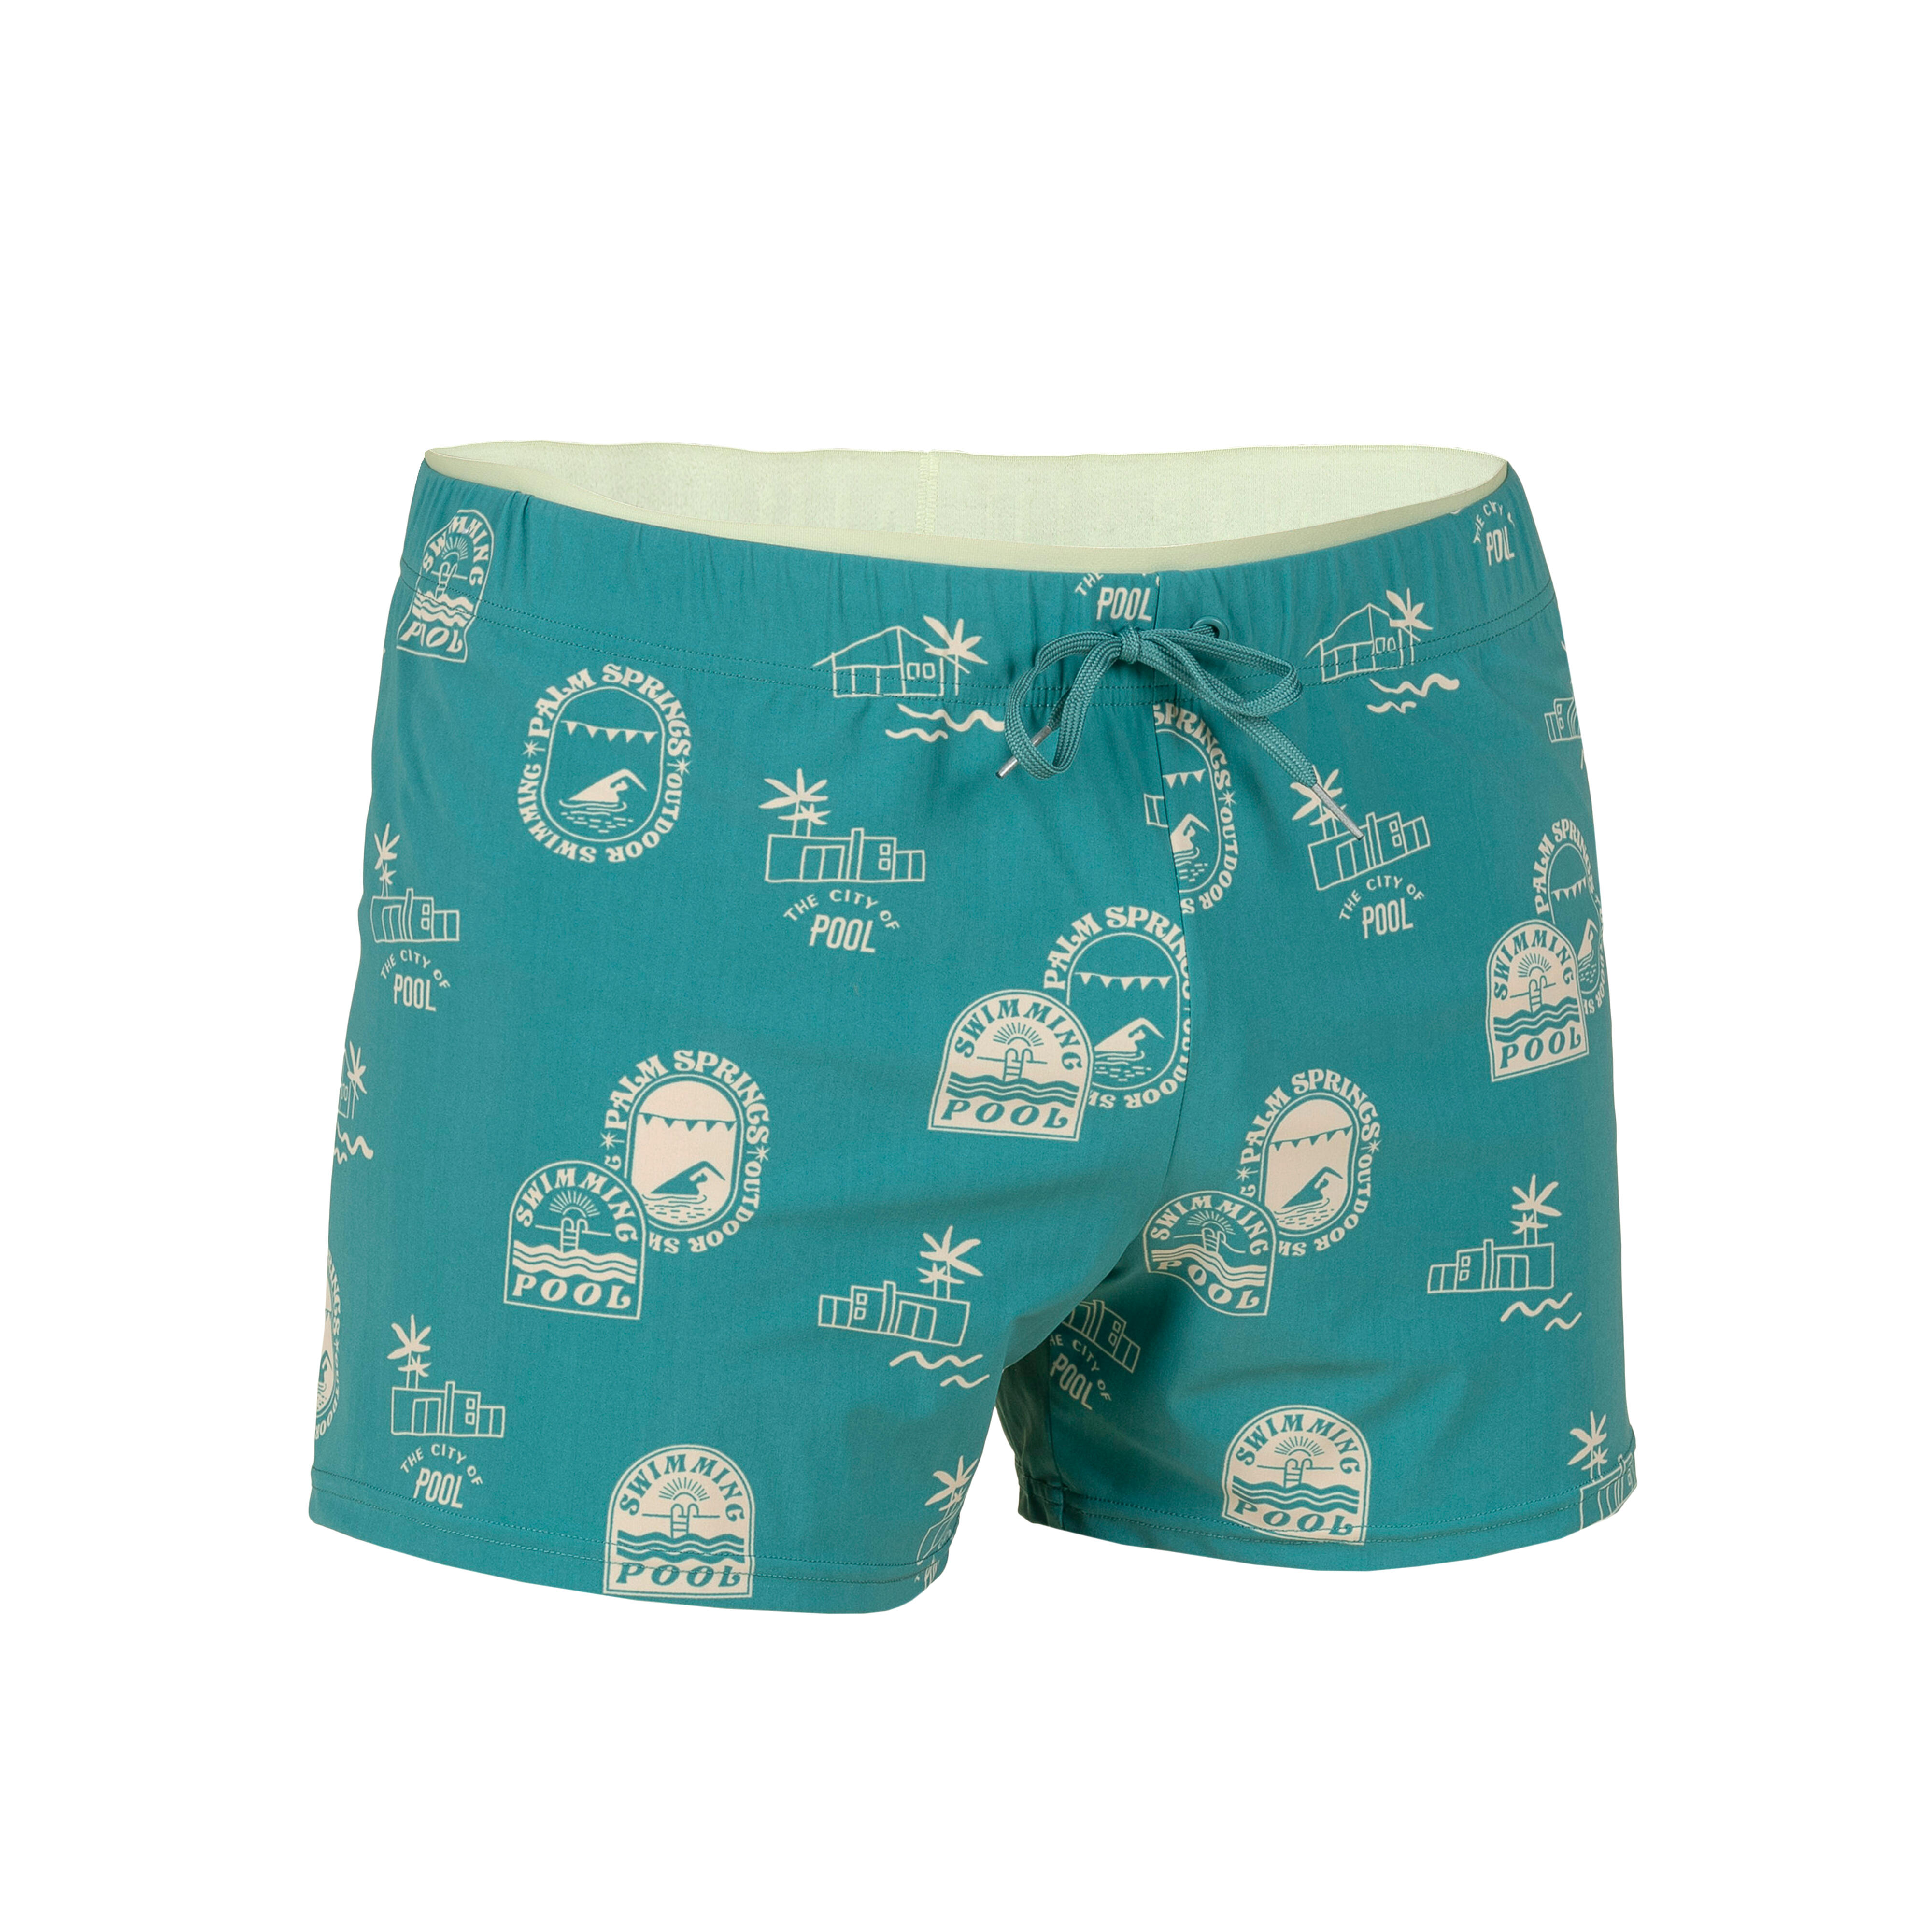 Details 75+ short pants swimsuit best - in.eteachers